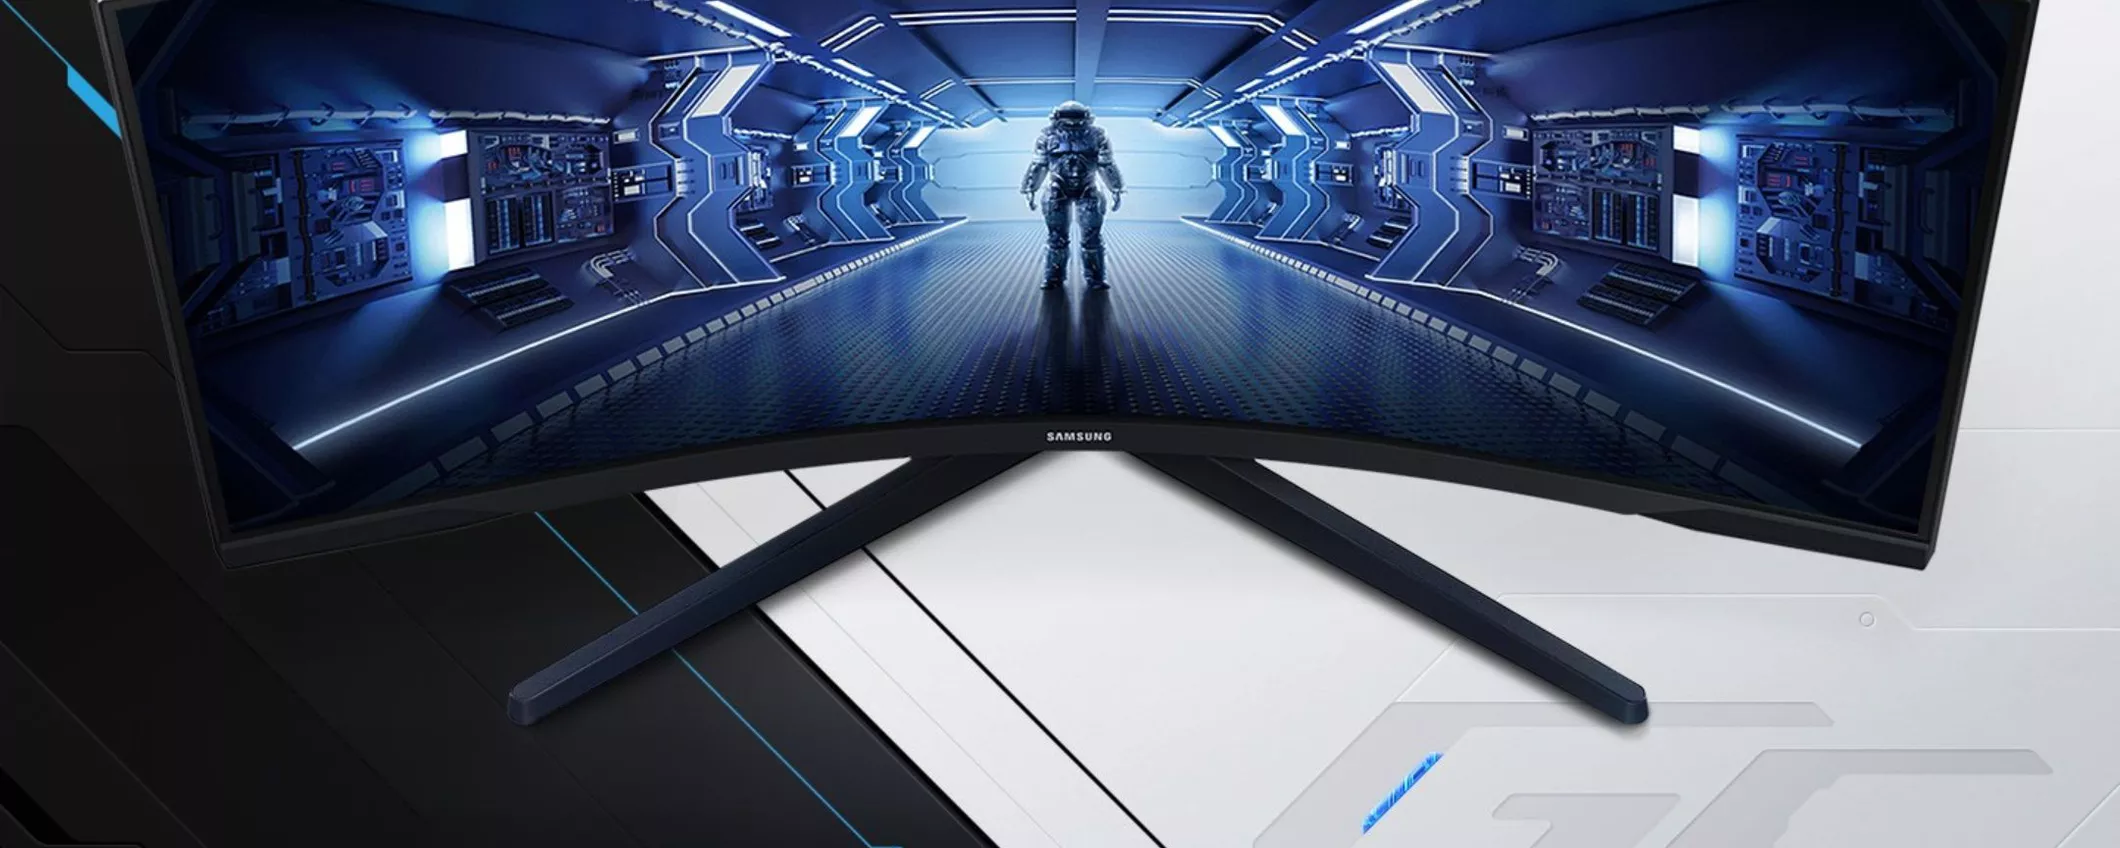 Monitor Samsung Odyssey G3 per prestazioni TOP da 24 pollici in promo speciale su Amazon